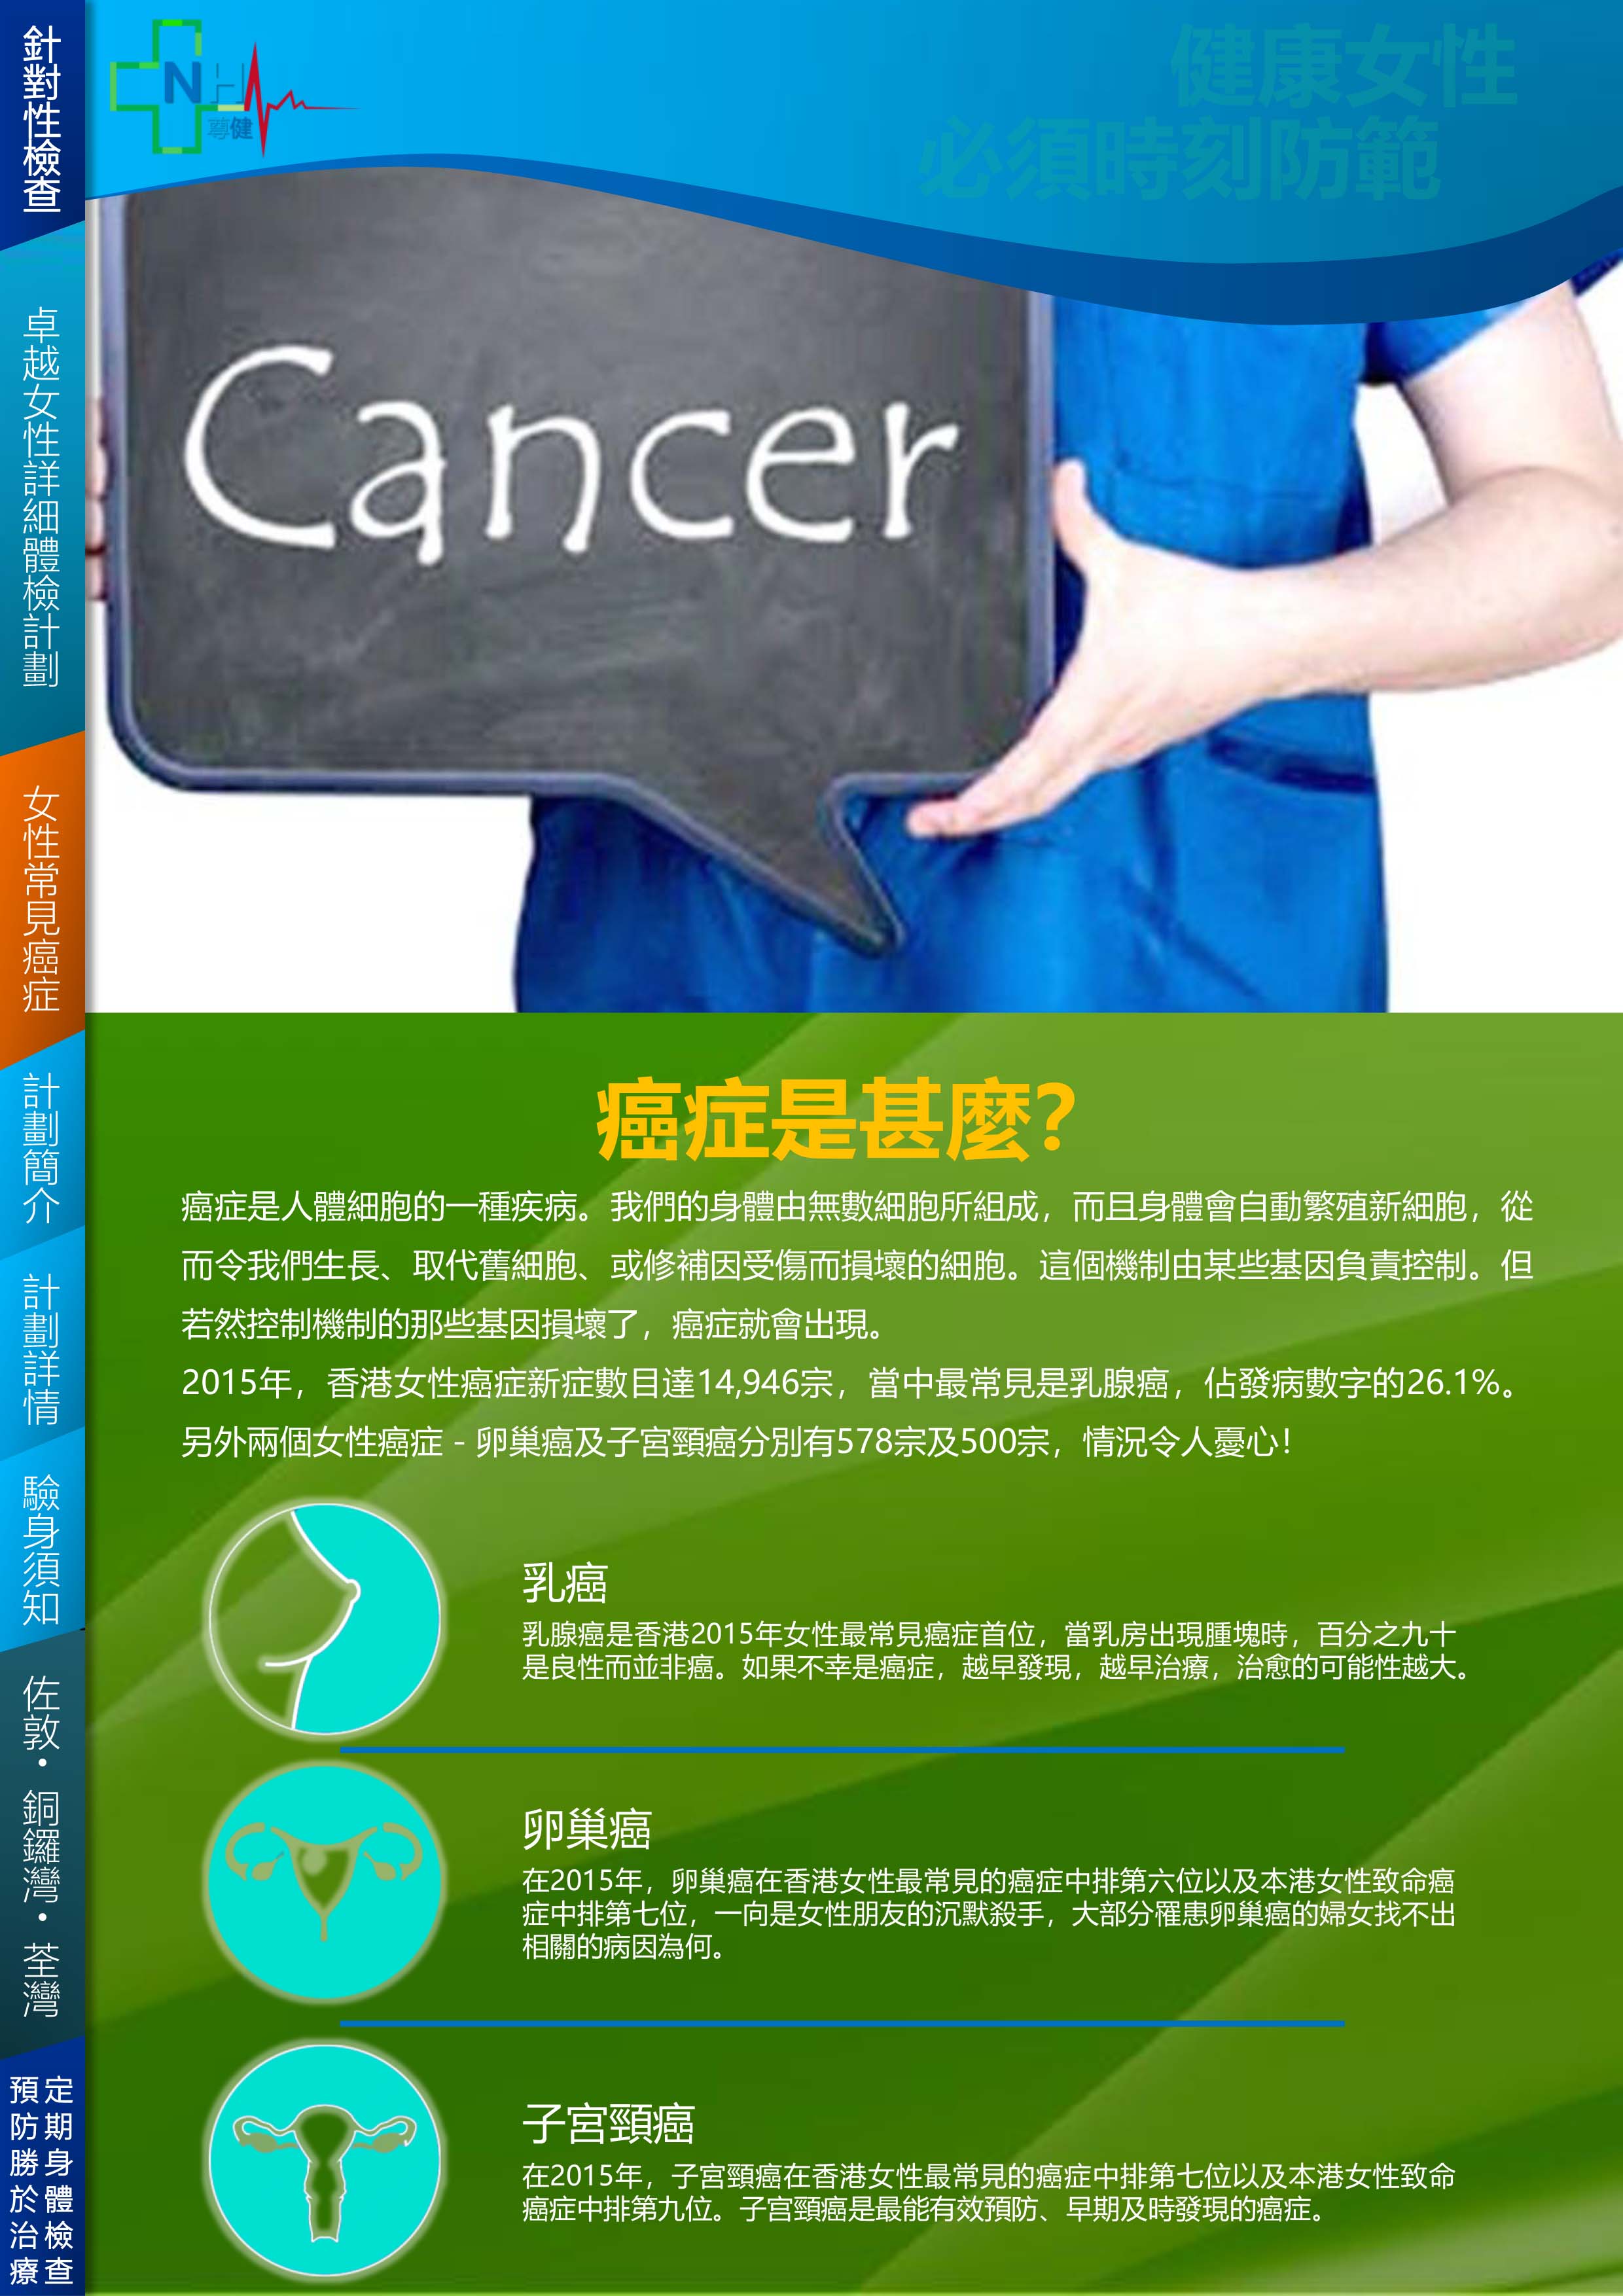 1d-female-body-check-cancer-2.jpg